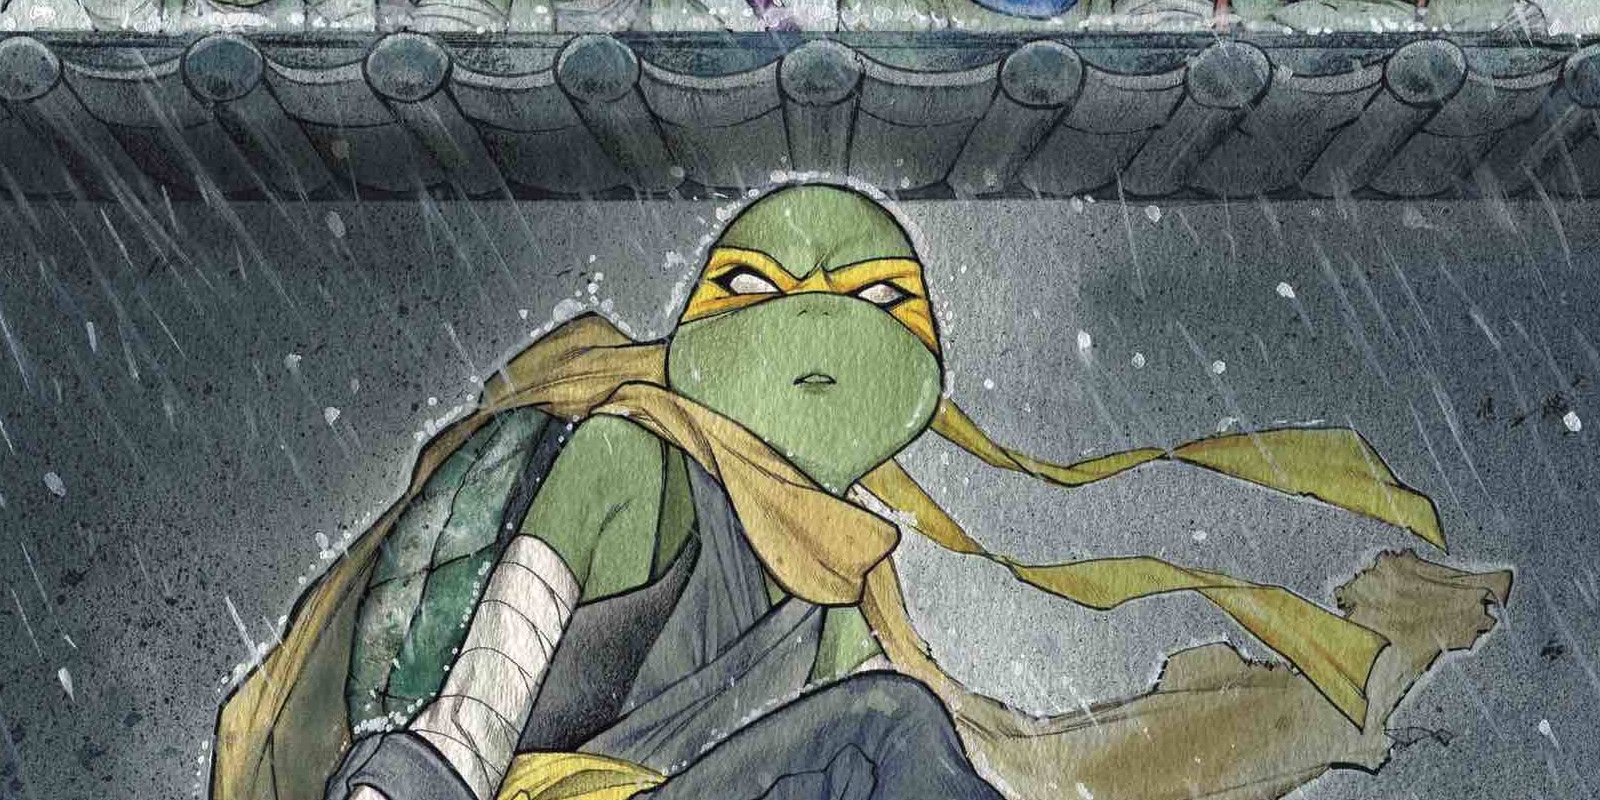 TMNT The Fifth Teenage Mutant Ninja Turtle Explained